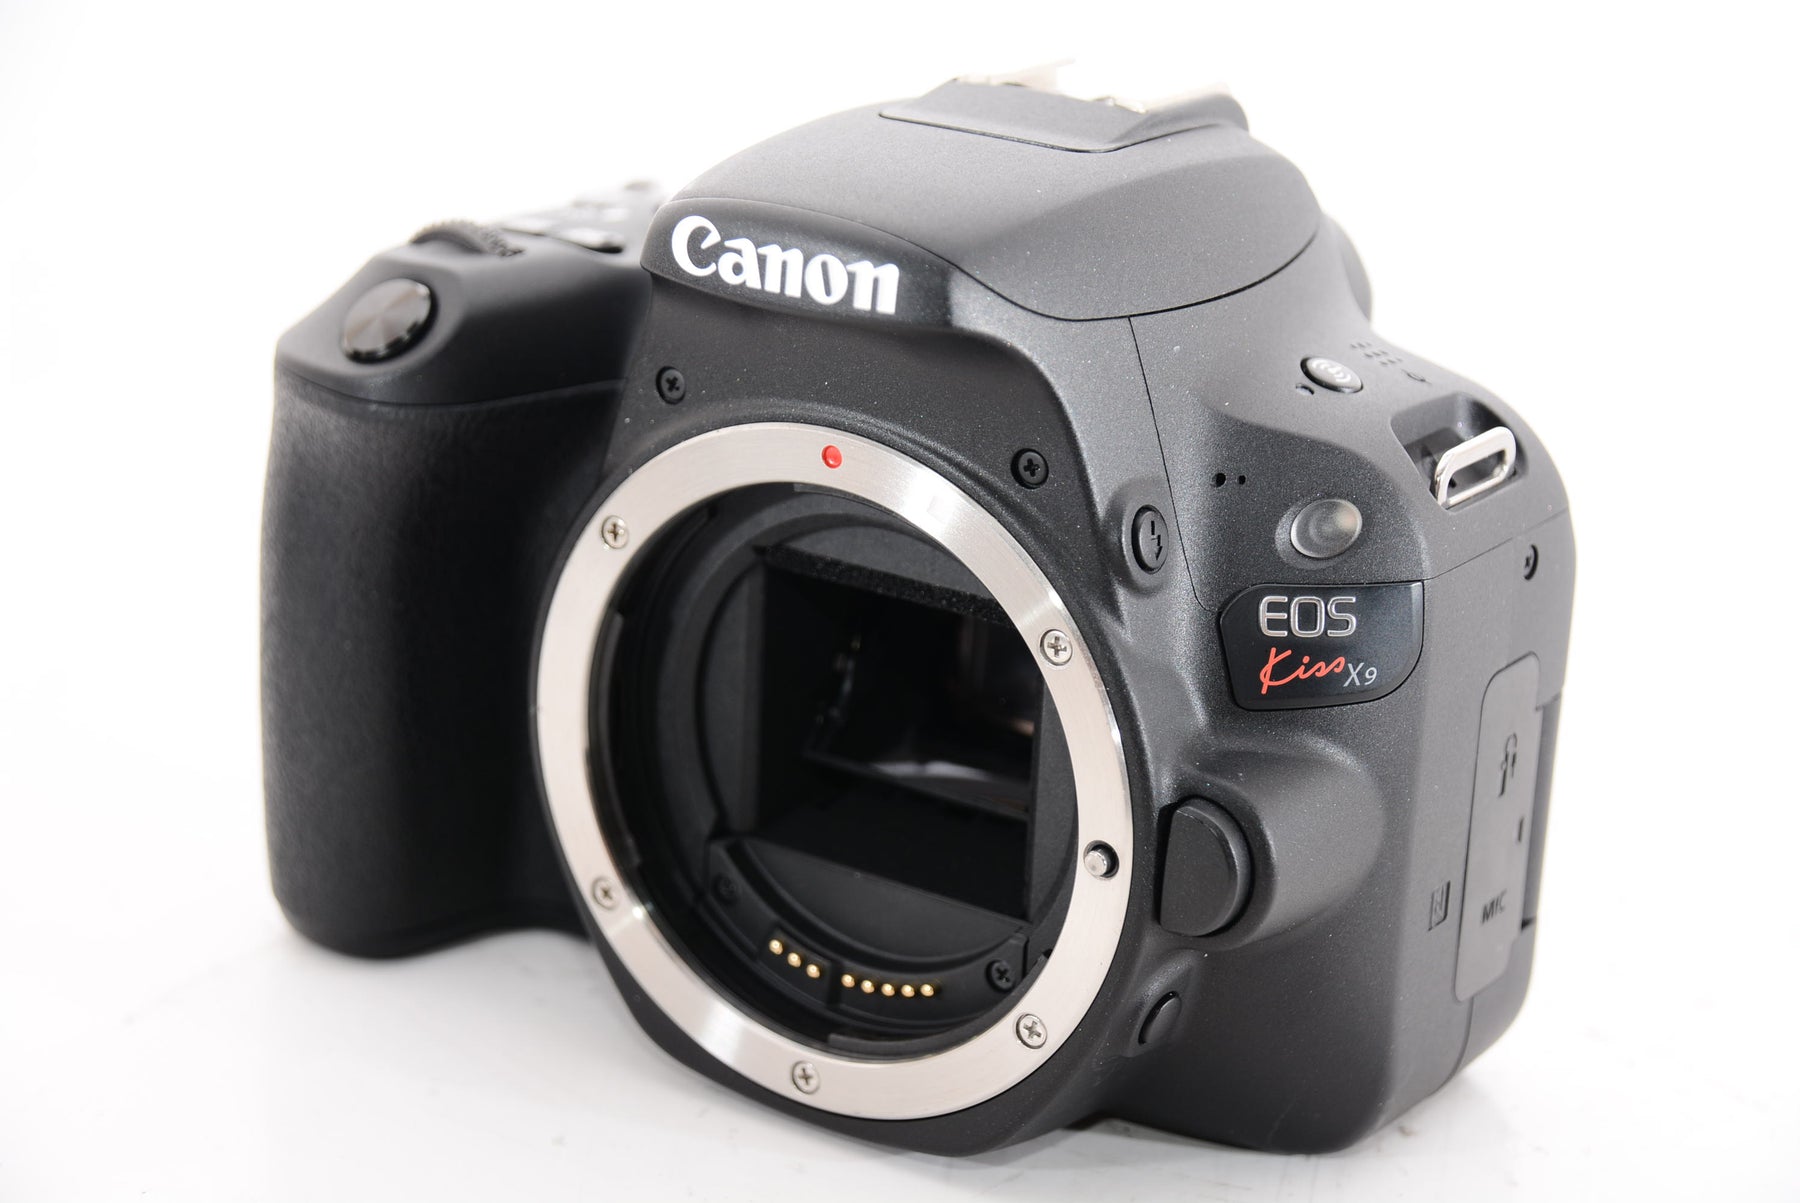 【外観特上級】Canon デジタル一眼レフカメラ「EOS Kiss X9」ダブルズームキット (ブラック) EOSKISSX9BK-WKIT